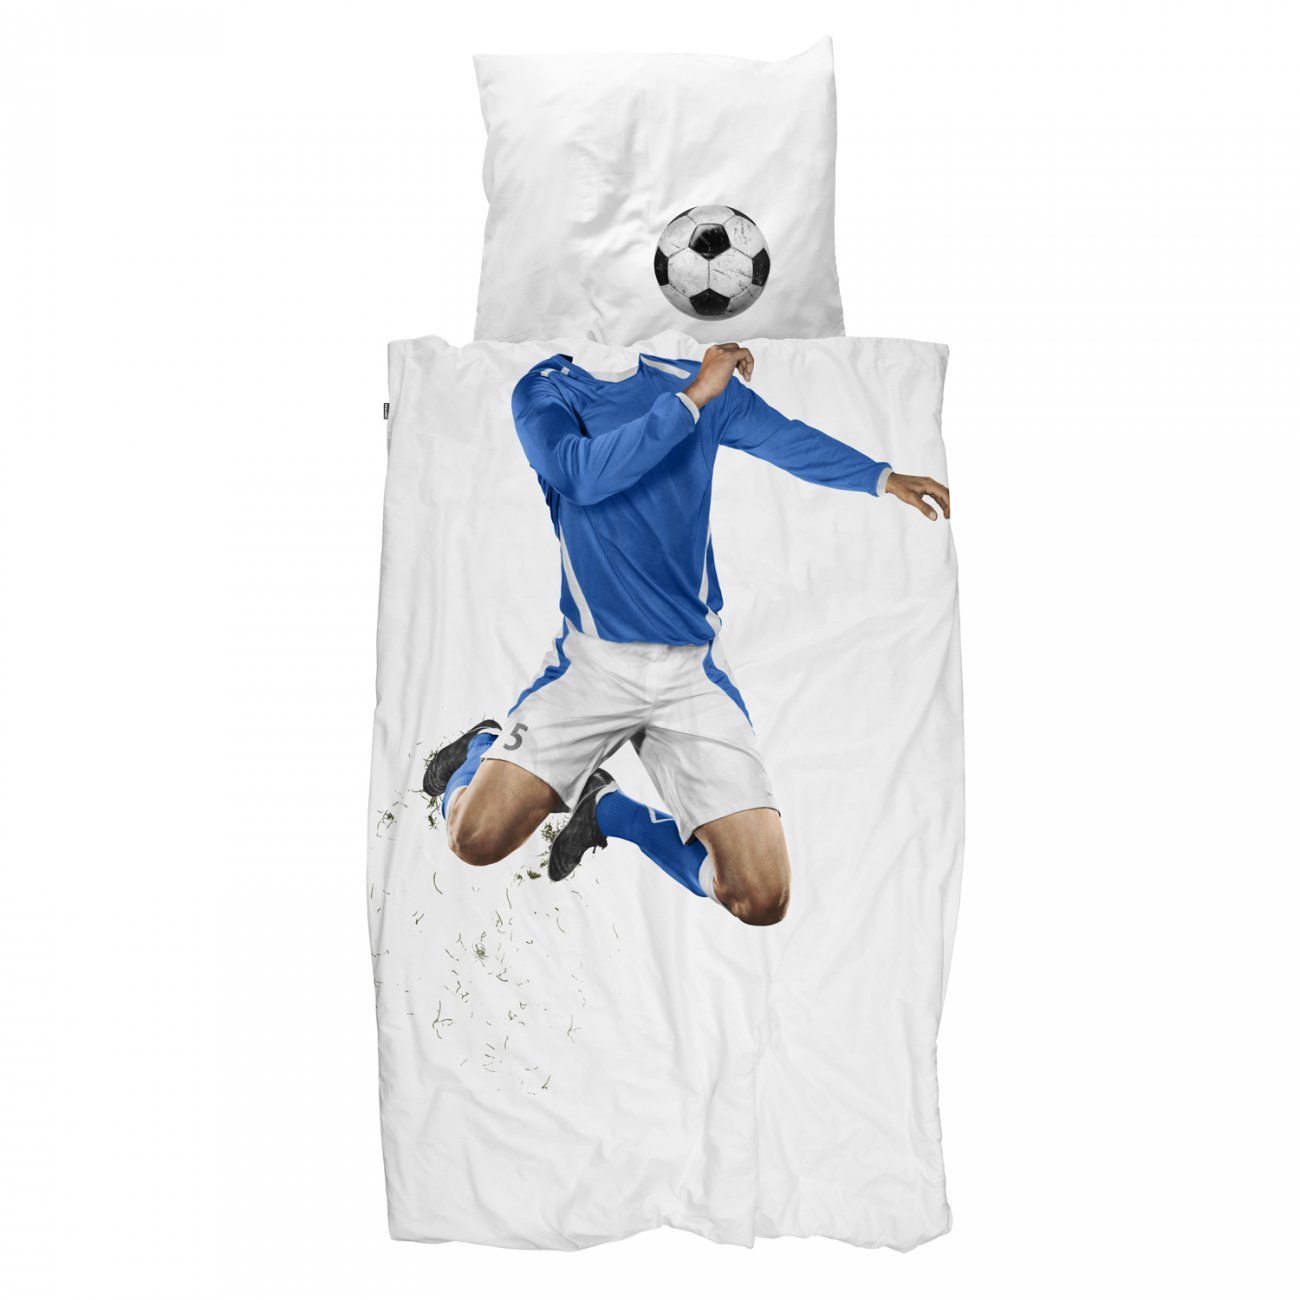 https://www.fundesign.nl/media/catalog/product/s/o/soccer_blauw_1.jpeg